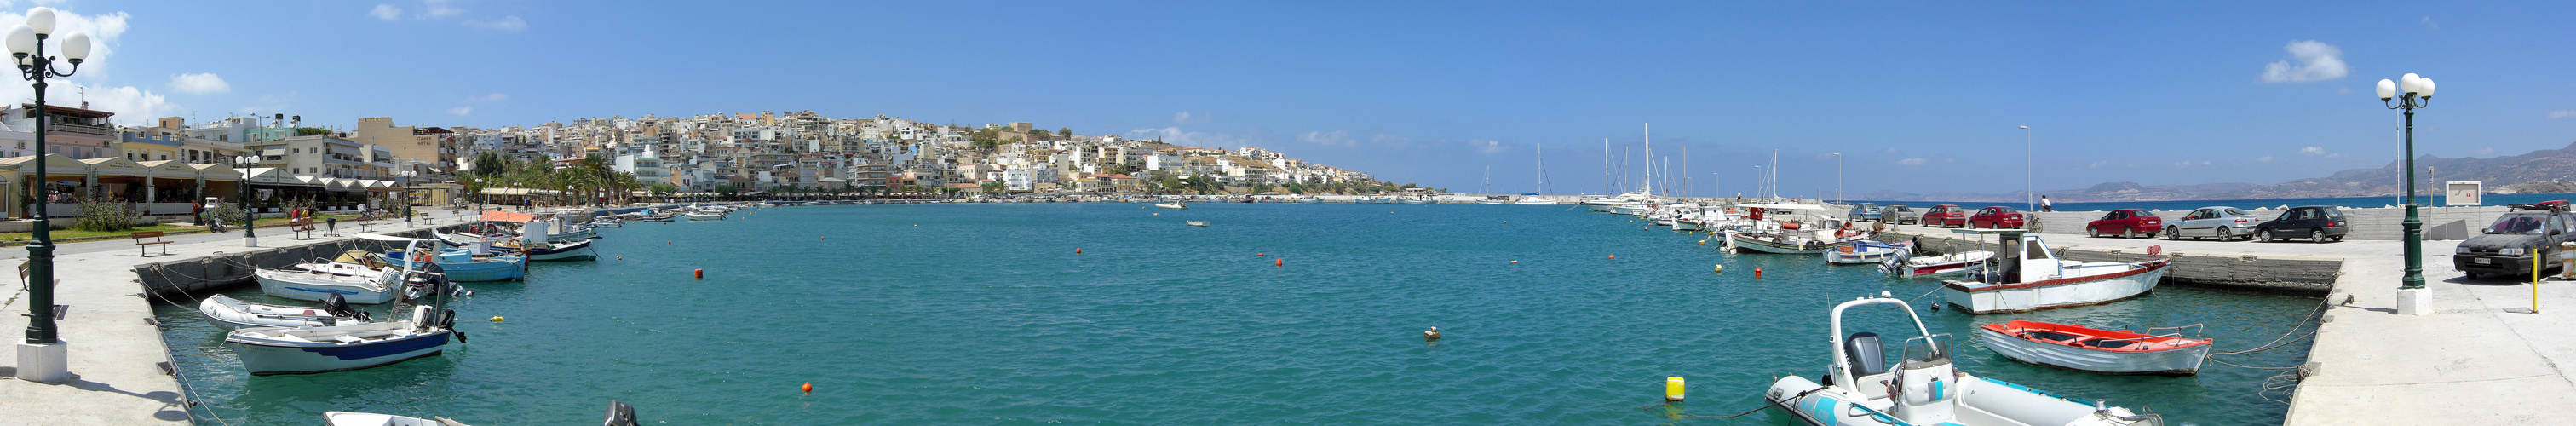 Die weiße Stadt Sitia auf der Insel Kreta